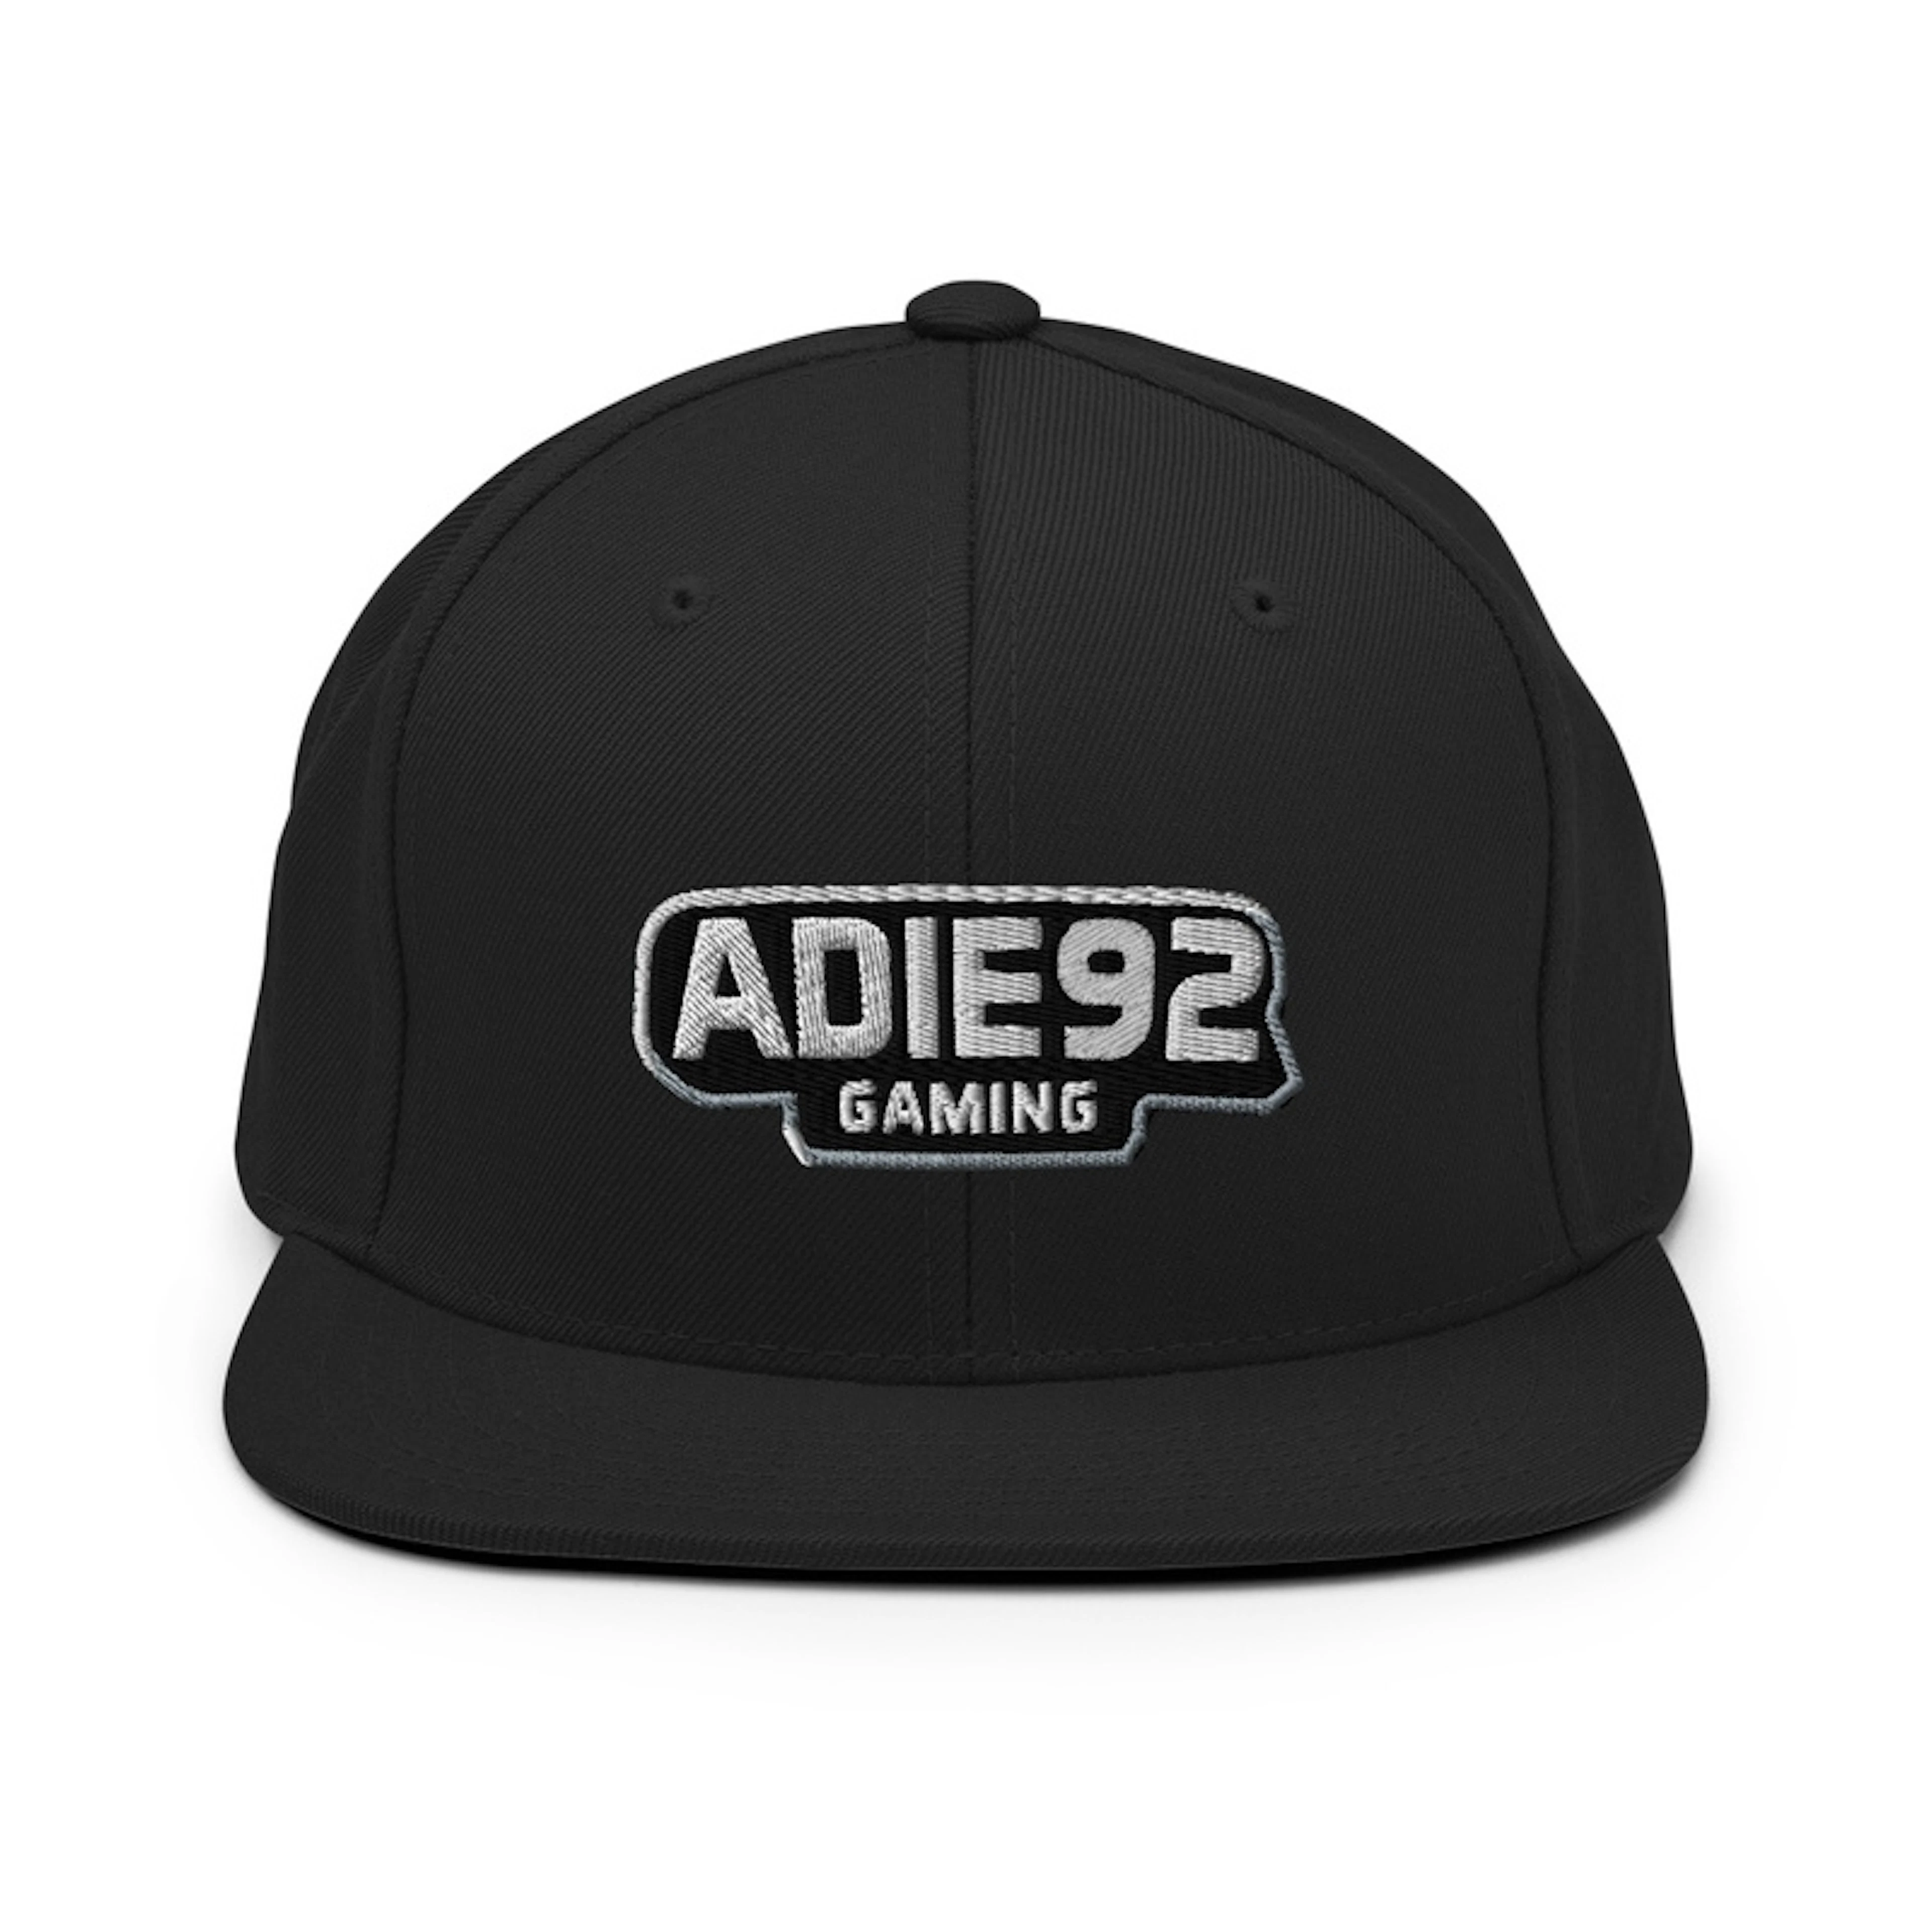 Adie92 Snapback Cap